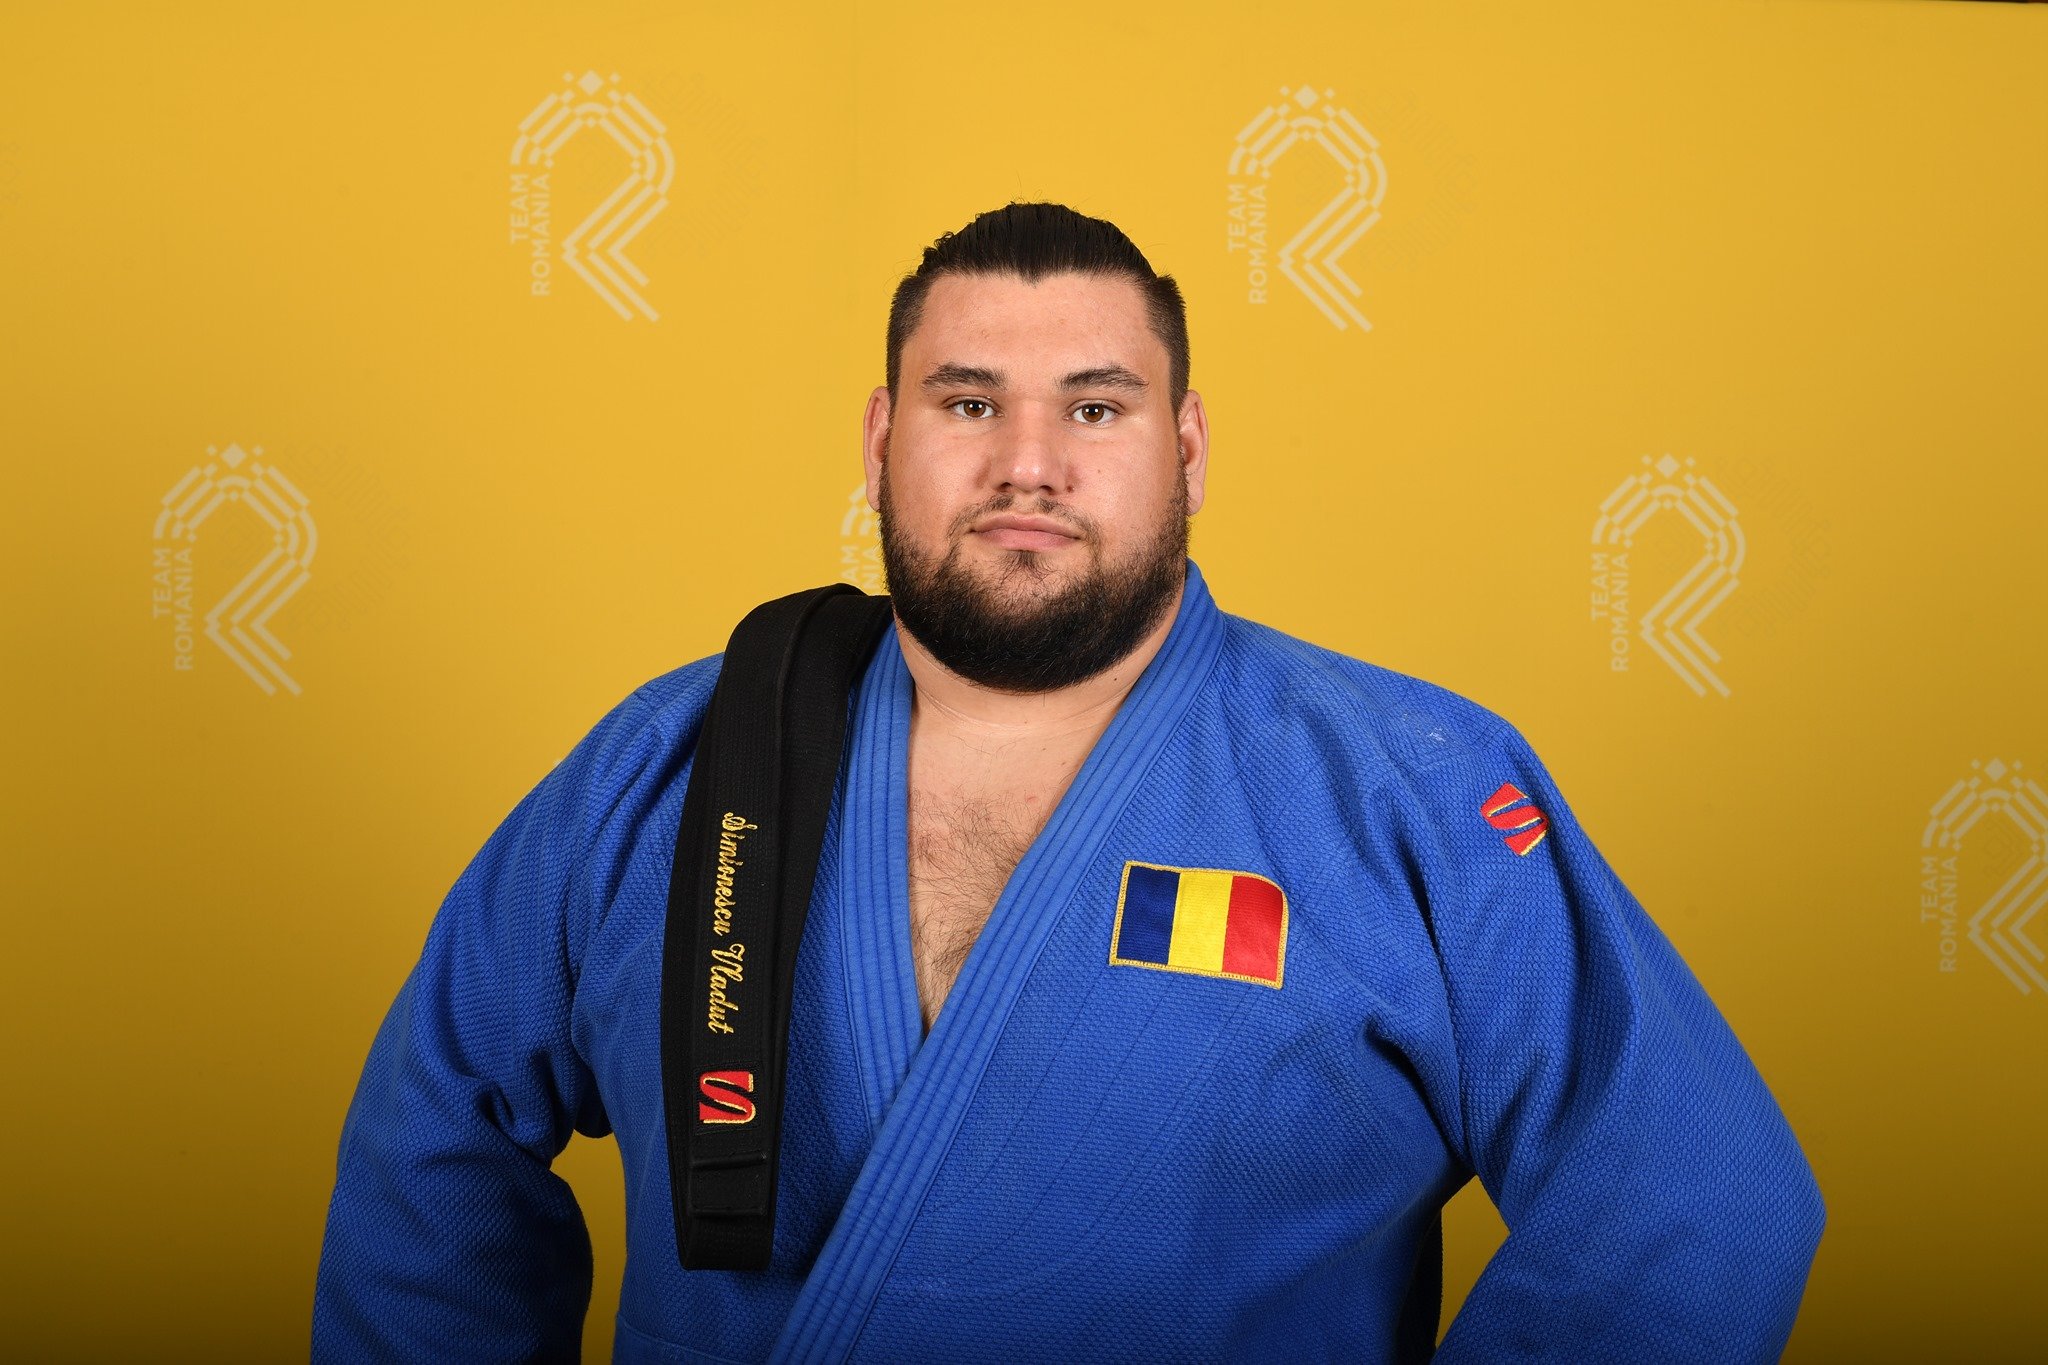 Jocurile Olimpice 2020 | Judoka Vlăduţ Simionescu și atletul Alin Firfirică, eliminați